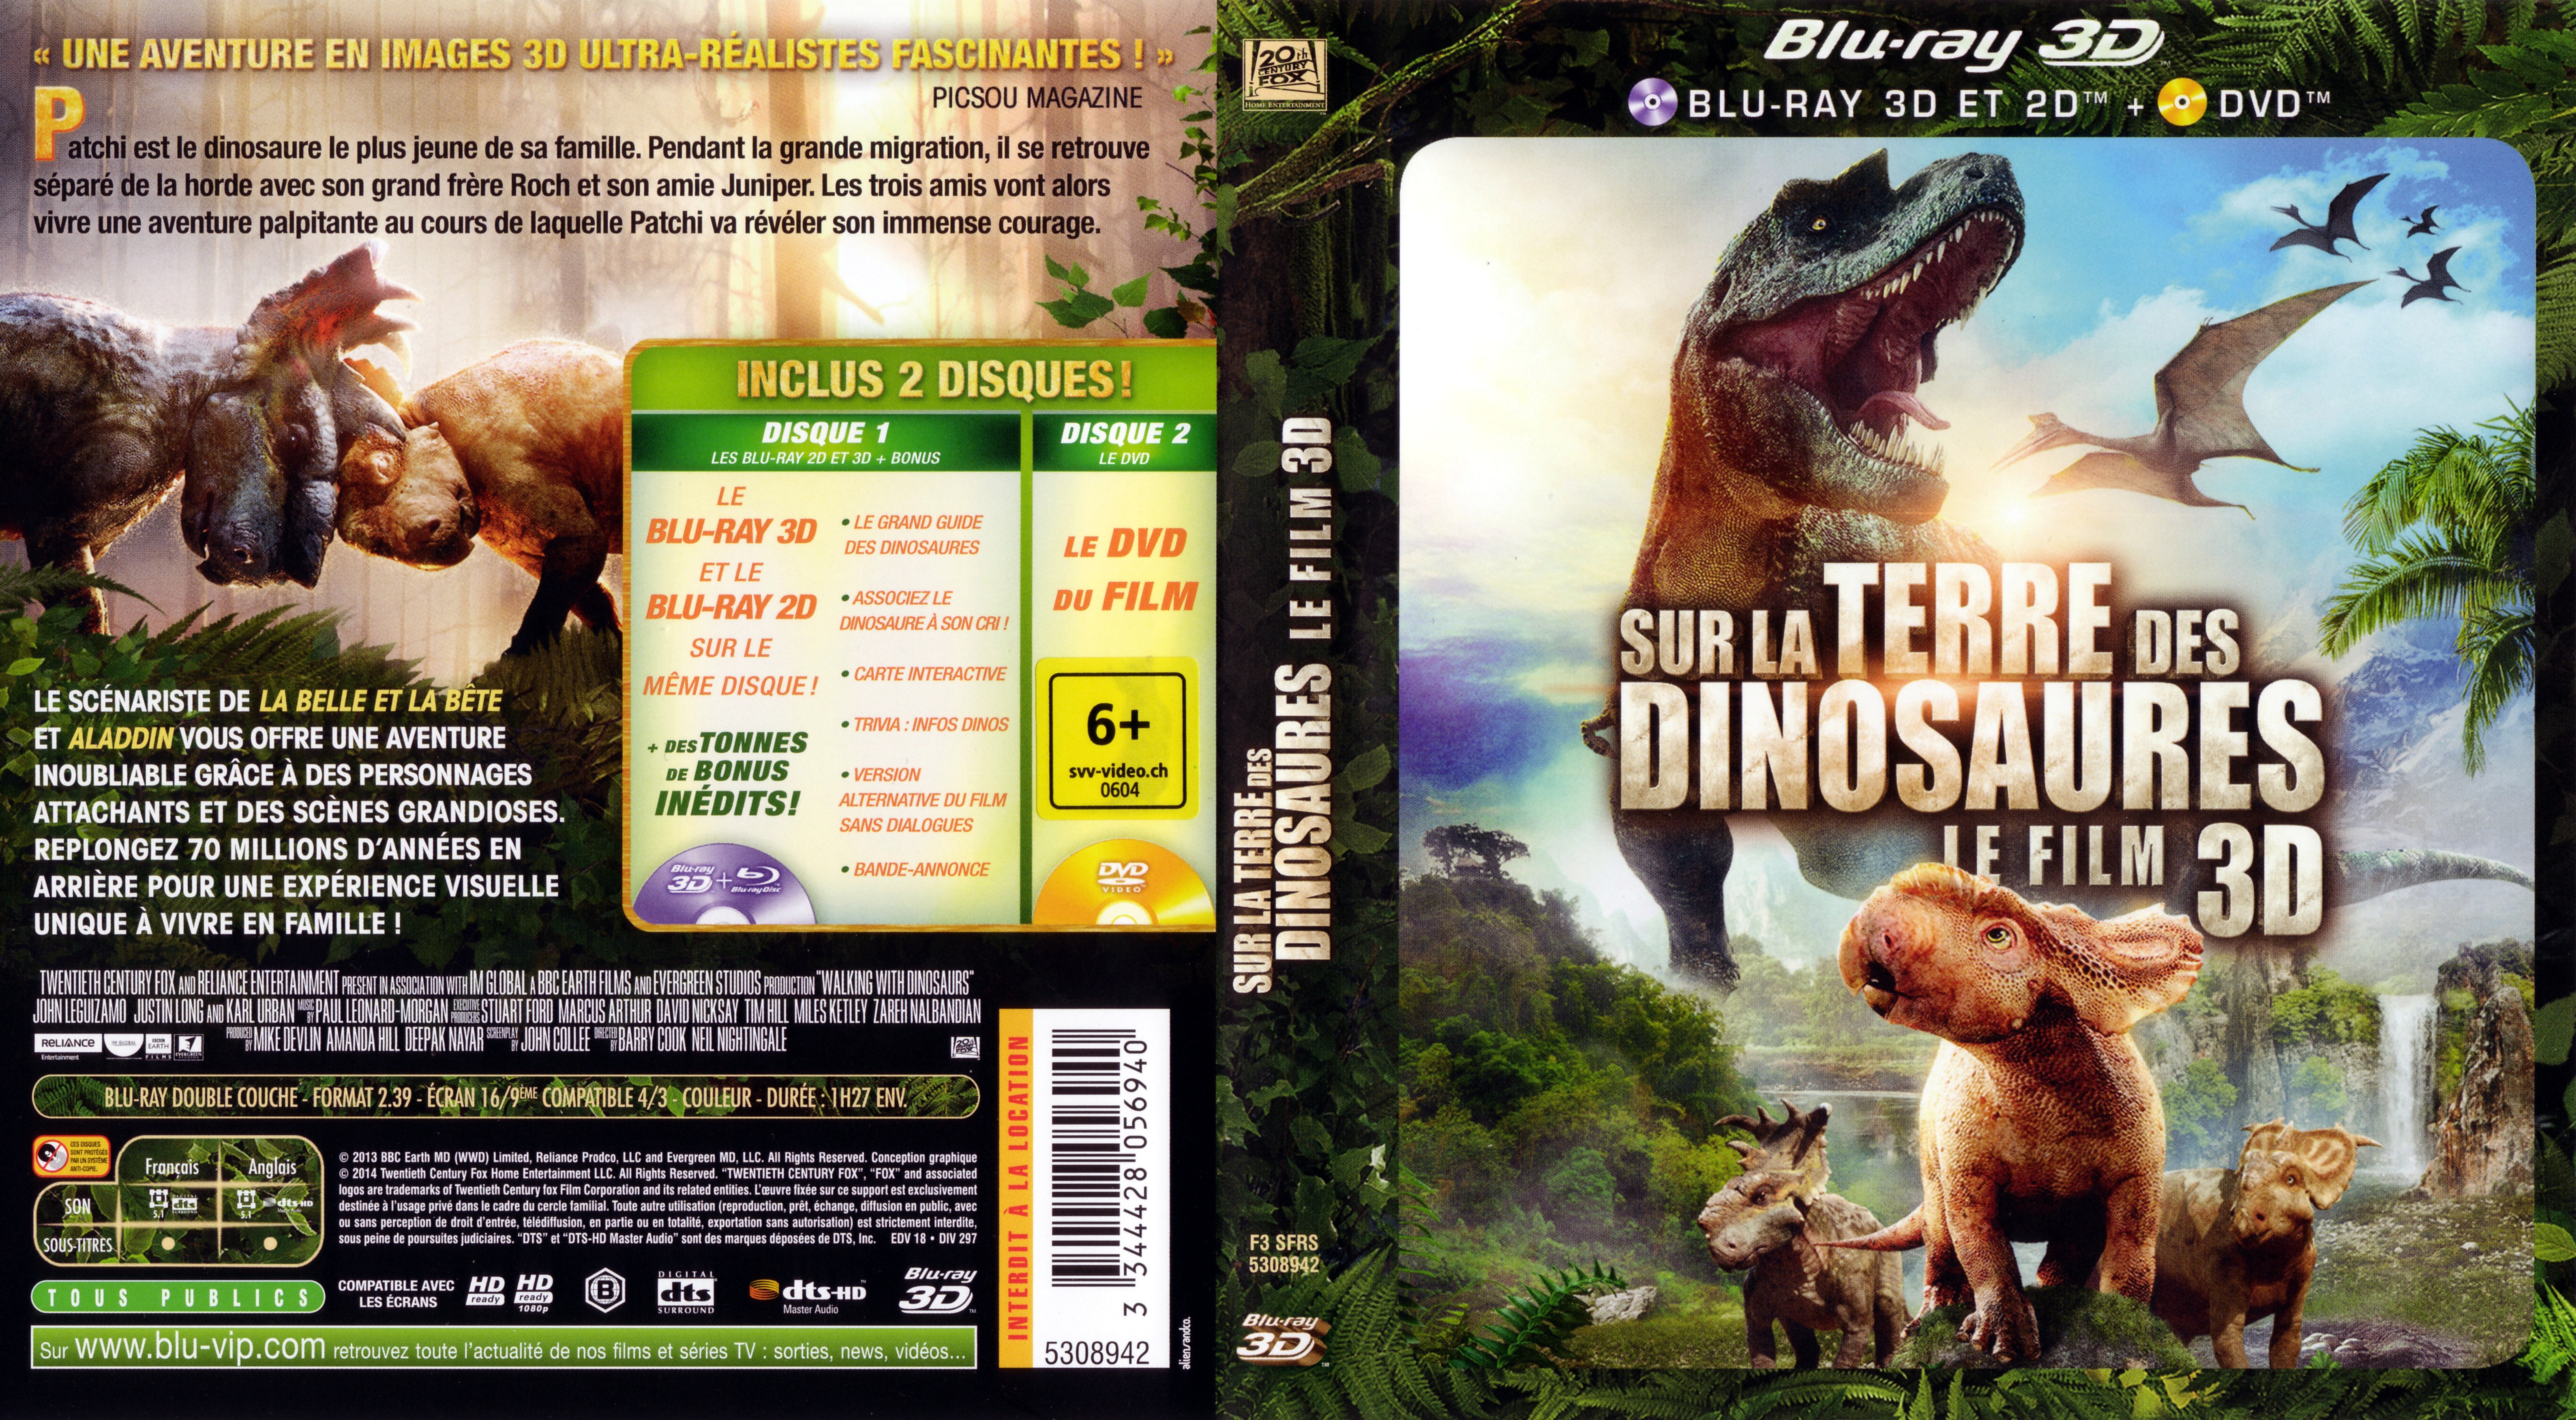 Jaquette DVD Sur la terre des dinosaures 3D (2013) (BLU-RAY)